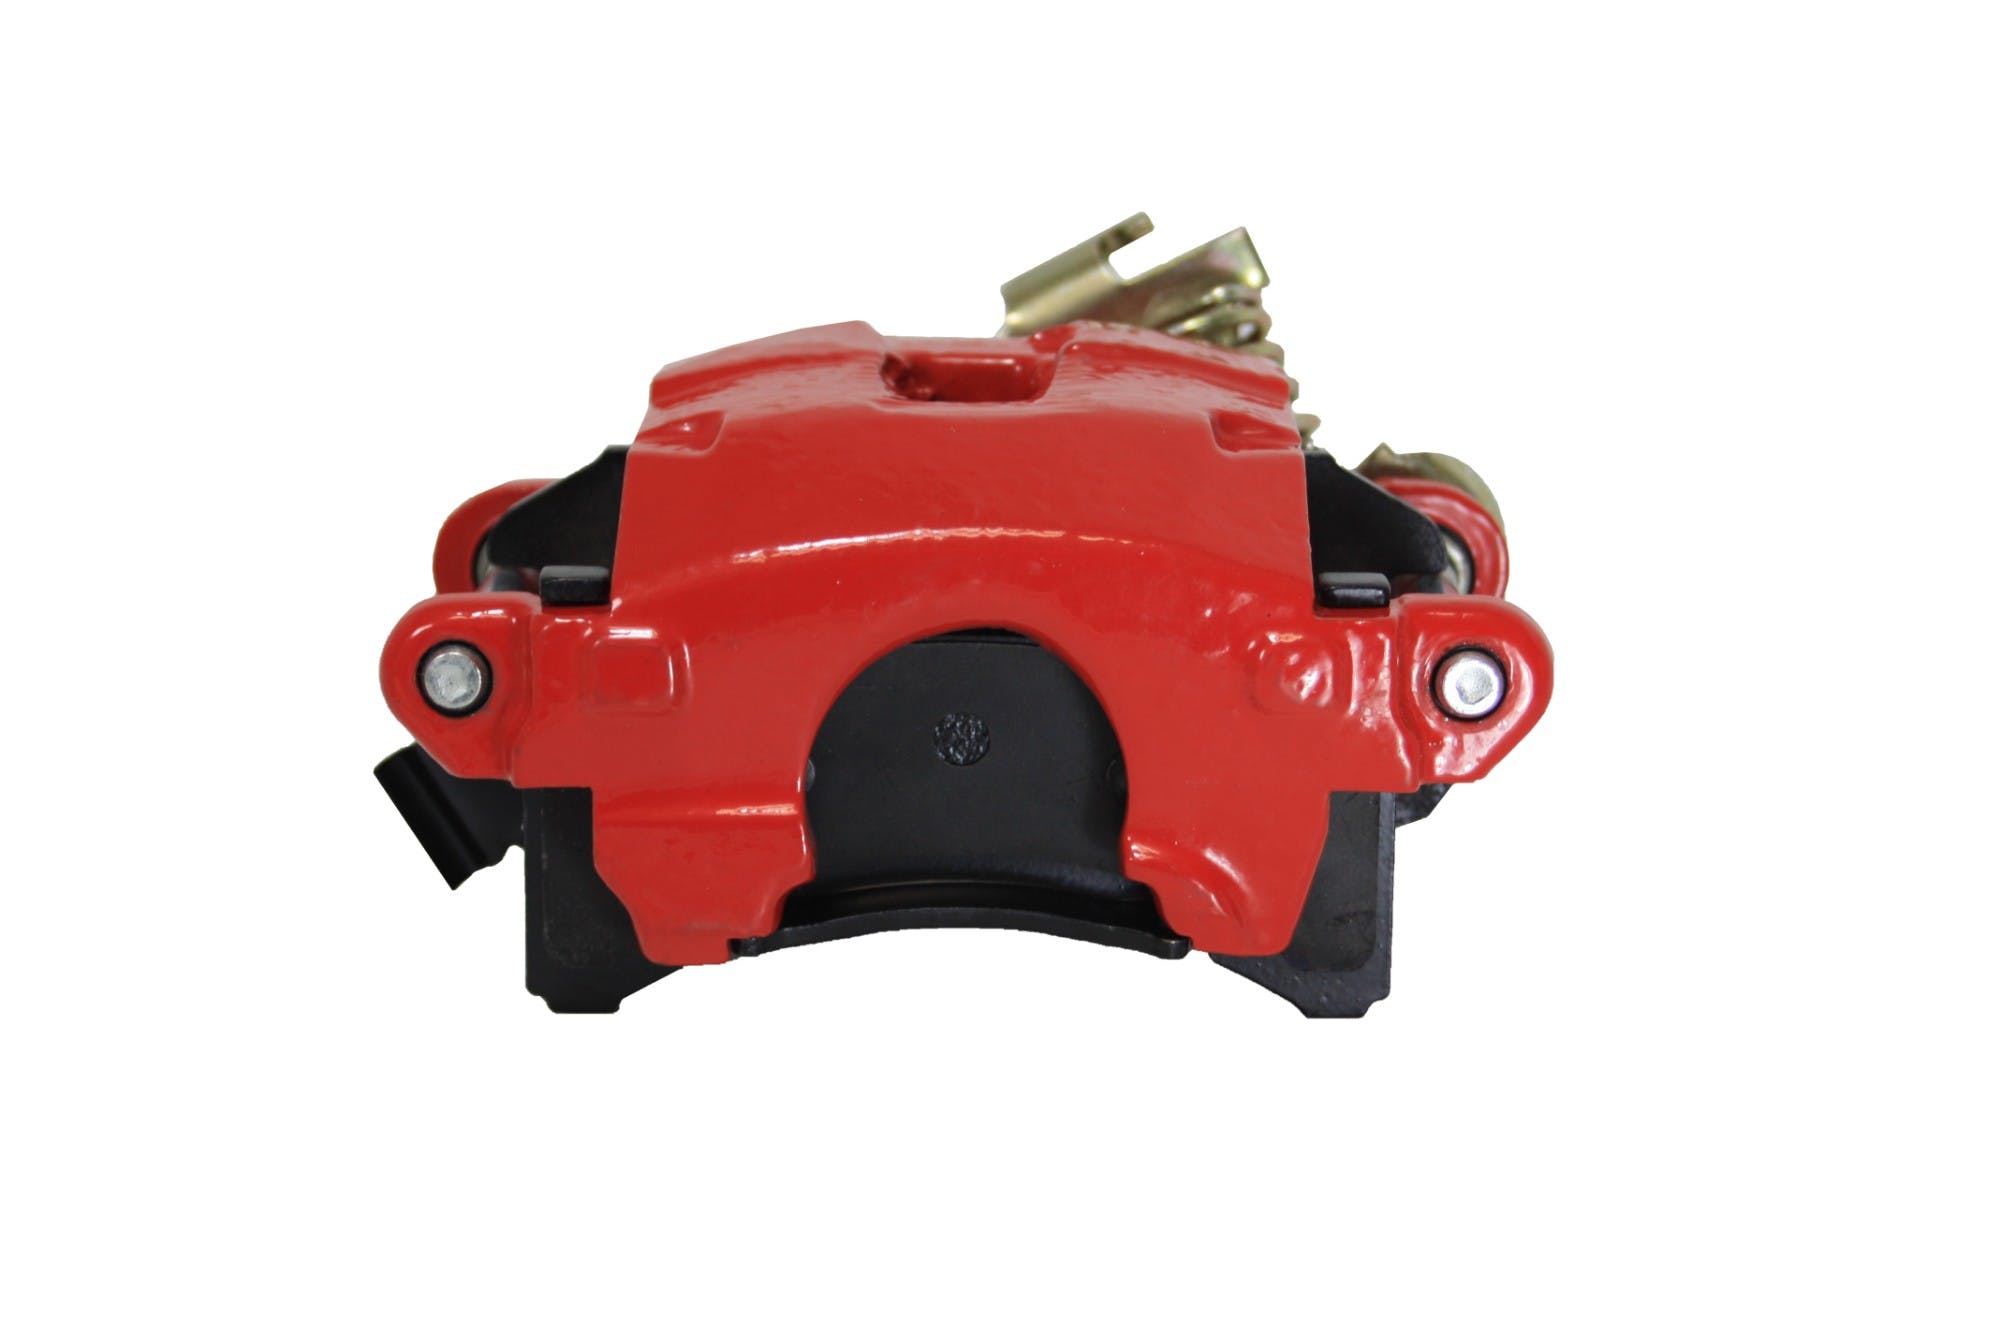 LEED Brakes RA4138LD Rear Single Piston caliper W/Parking Brake - Loaded RH - Red